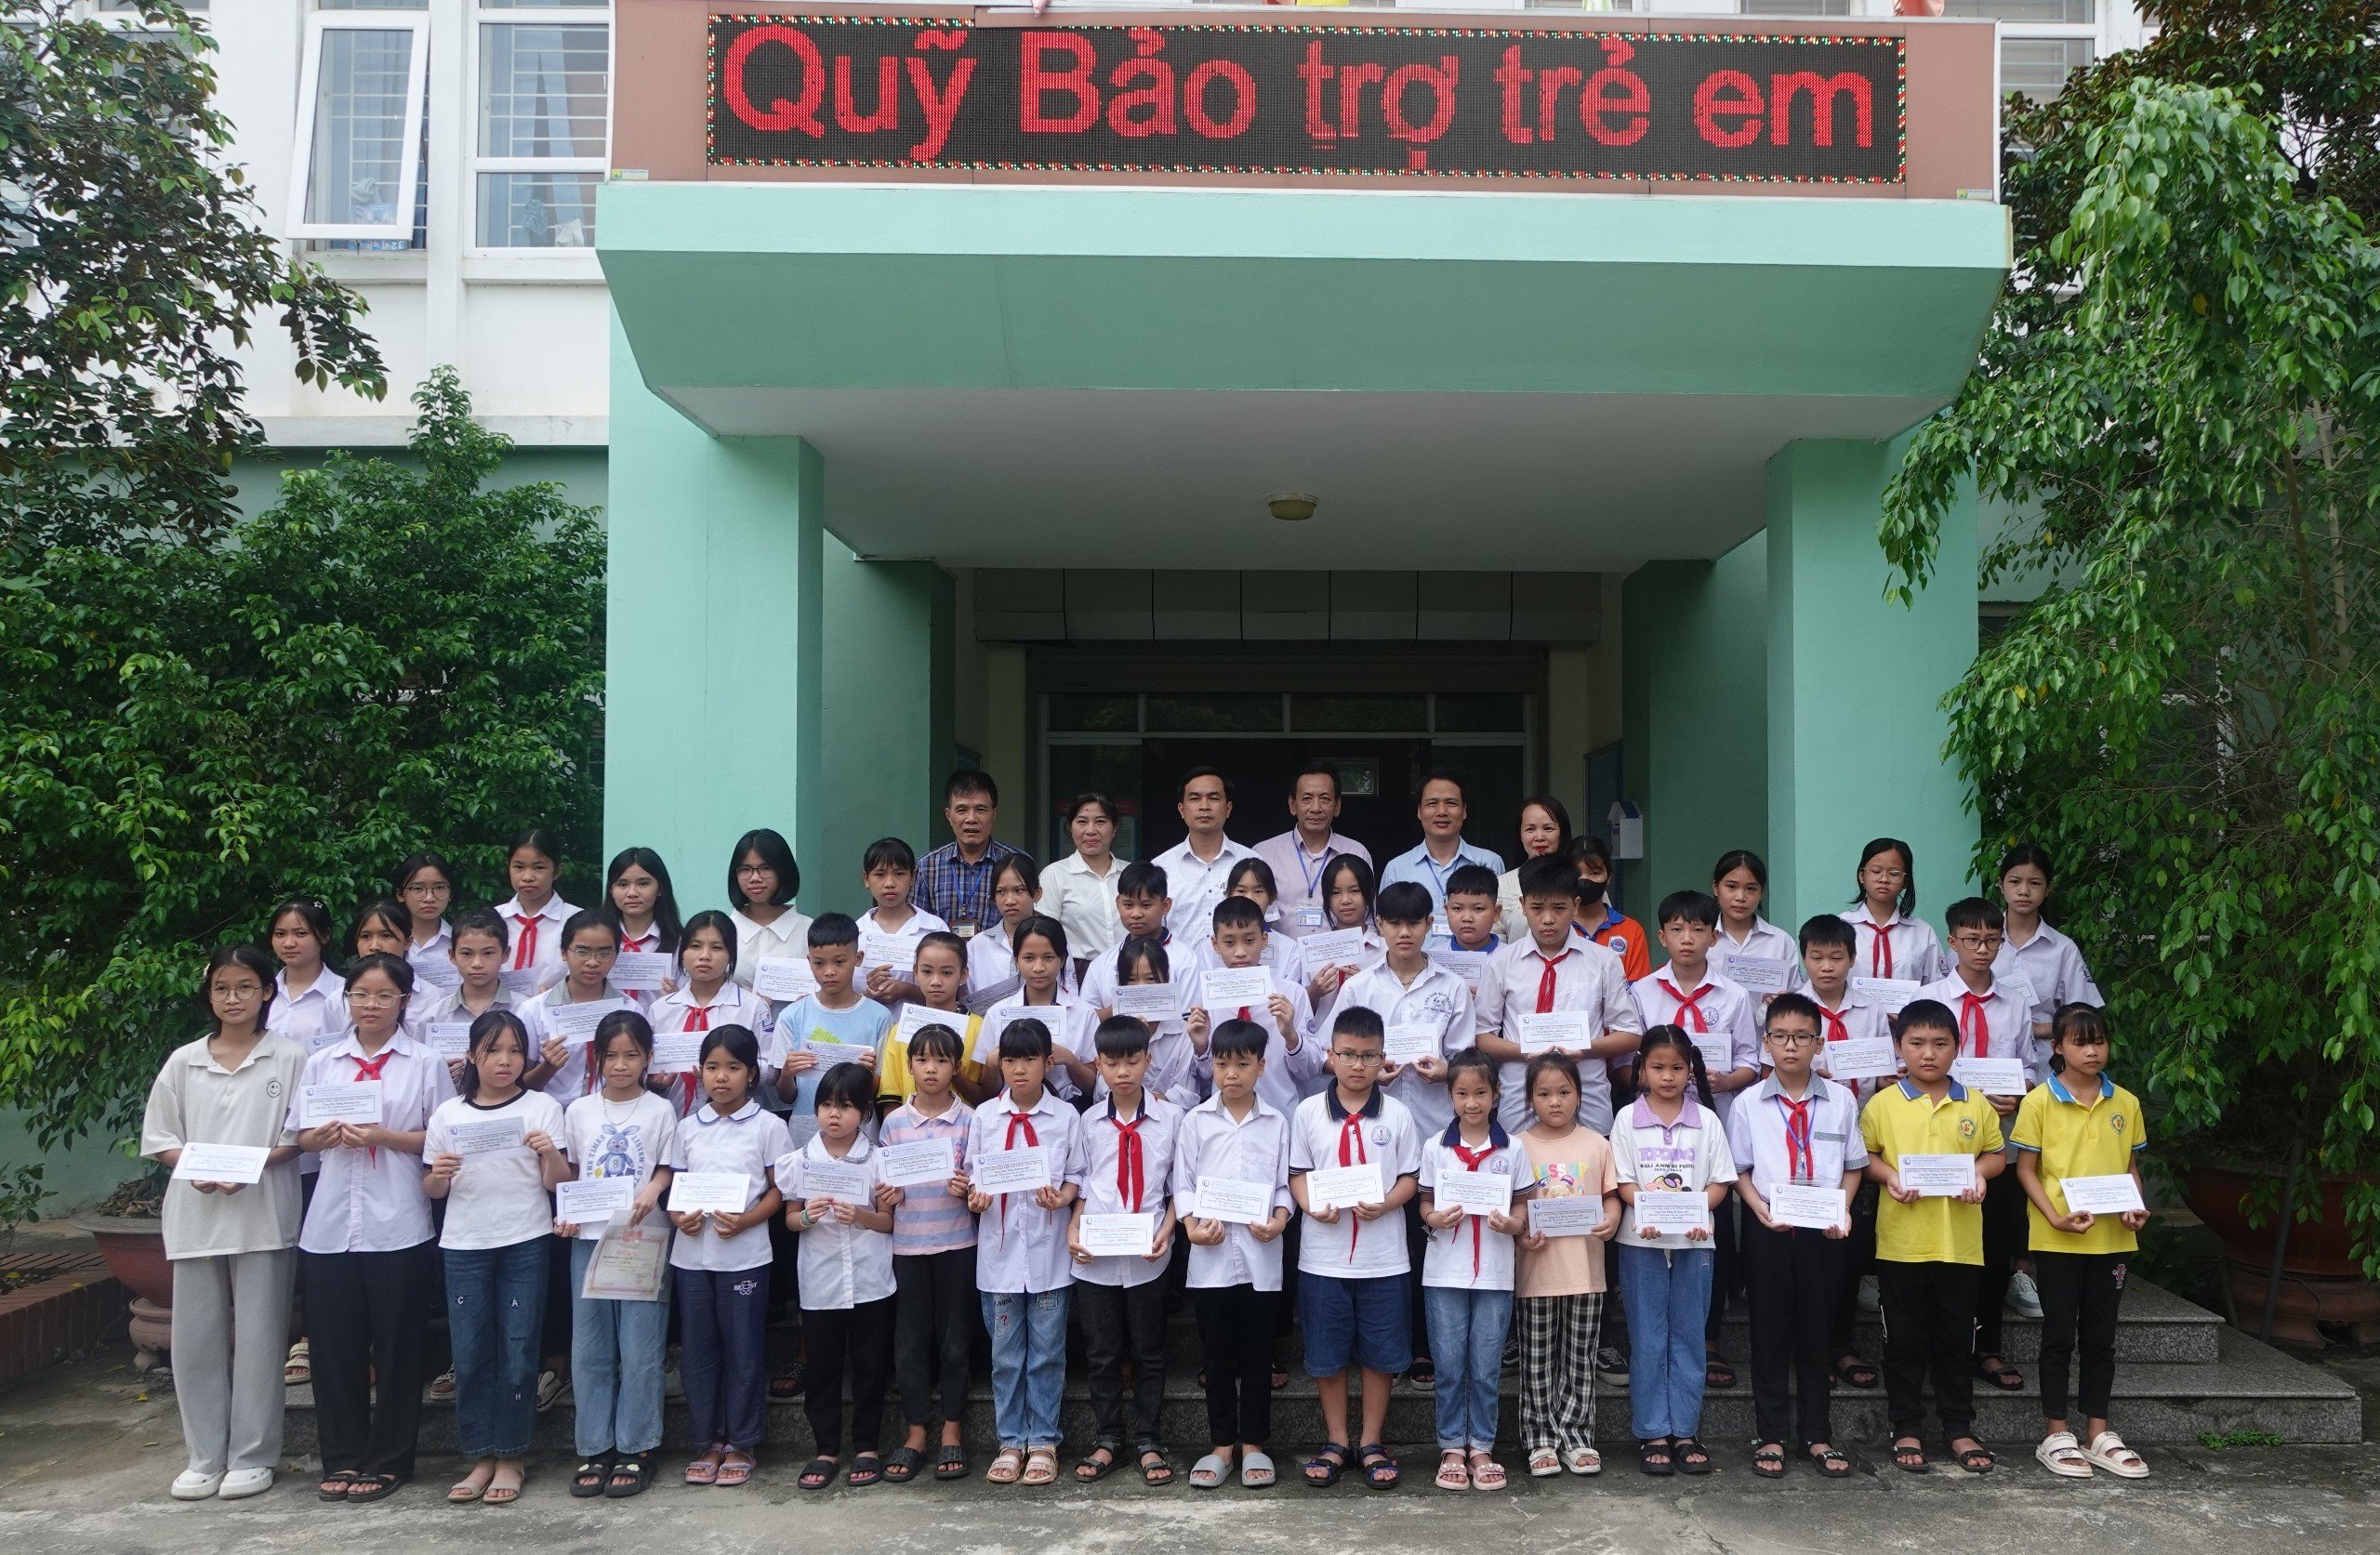 Quỹ Bảo trợ trẻ em tỉnh Vĩnh Phúc tổ chức chương trình Trao học bổng thường niên năm 2023.